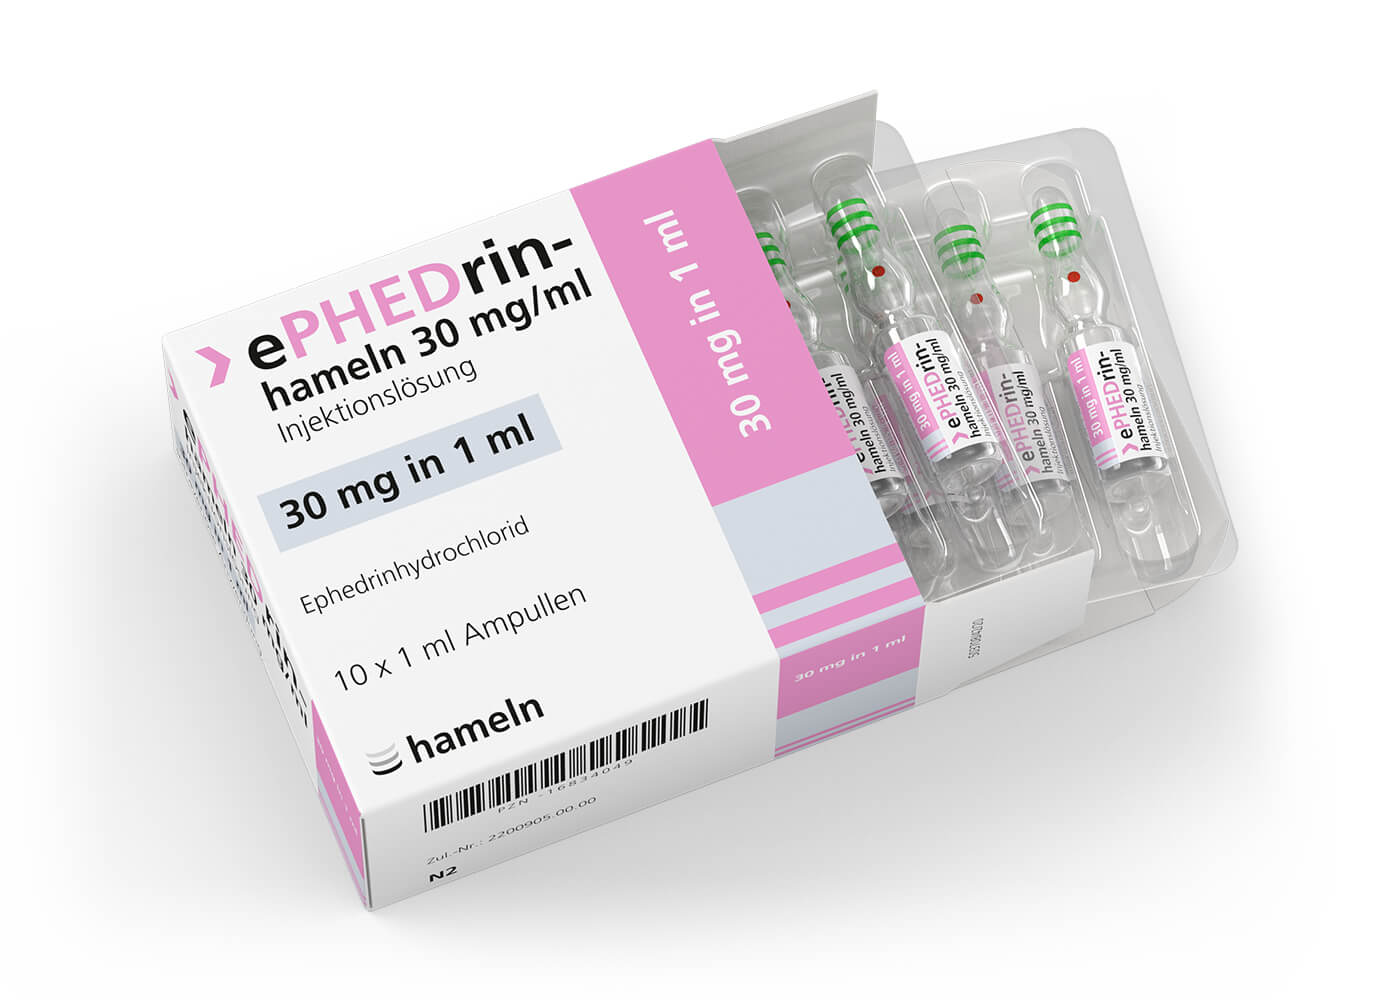 Ephedrin_DE_30_mg-ml_in_1_ml_Pack-Amp_10St_2020-42